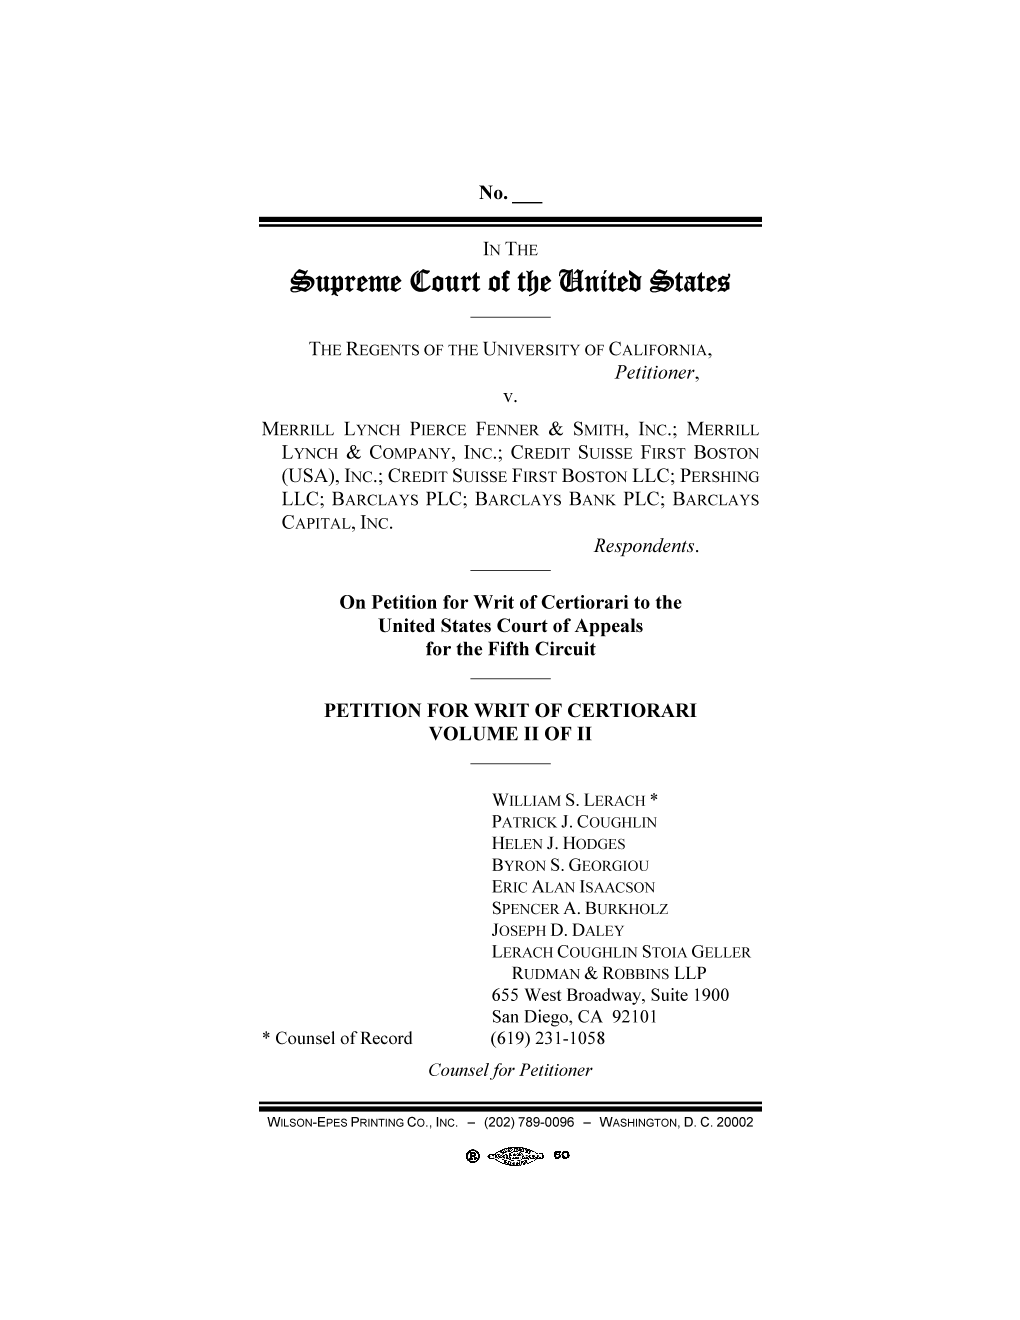 Petition for Writ of Certiorari, Volume II, Regents V